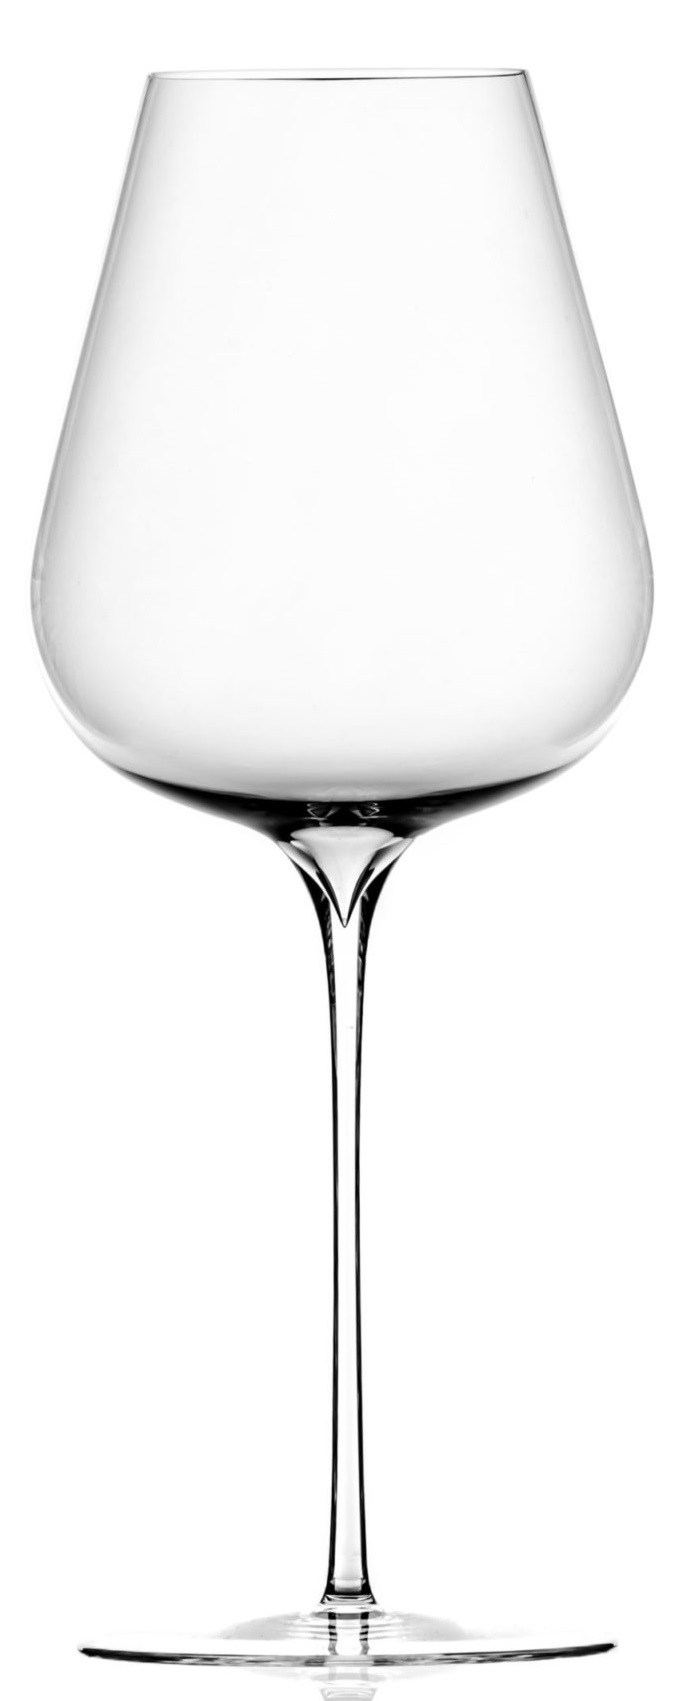 Pandora - Bílé víno 460 ml, Květná 1794